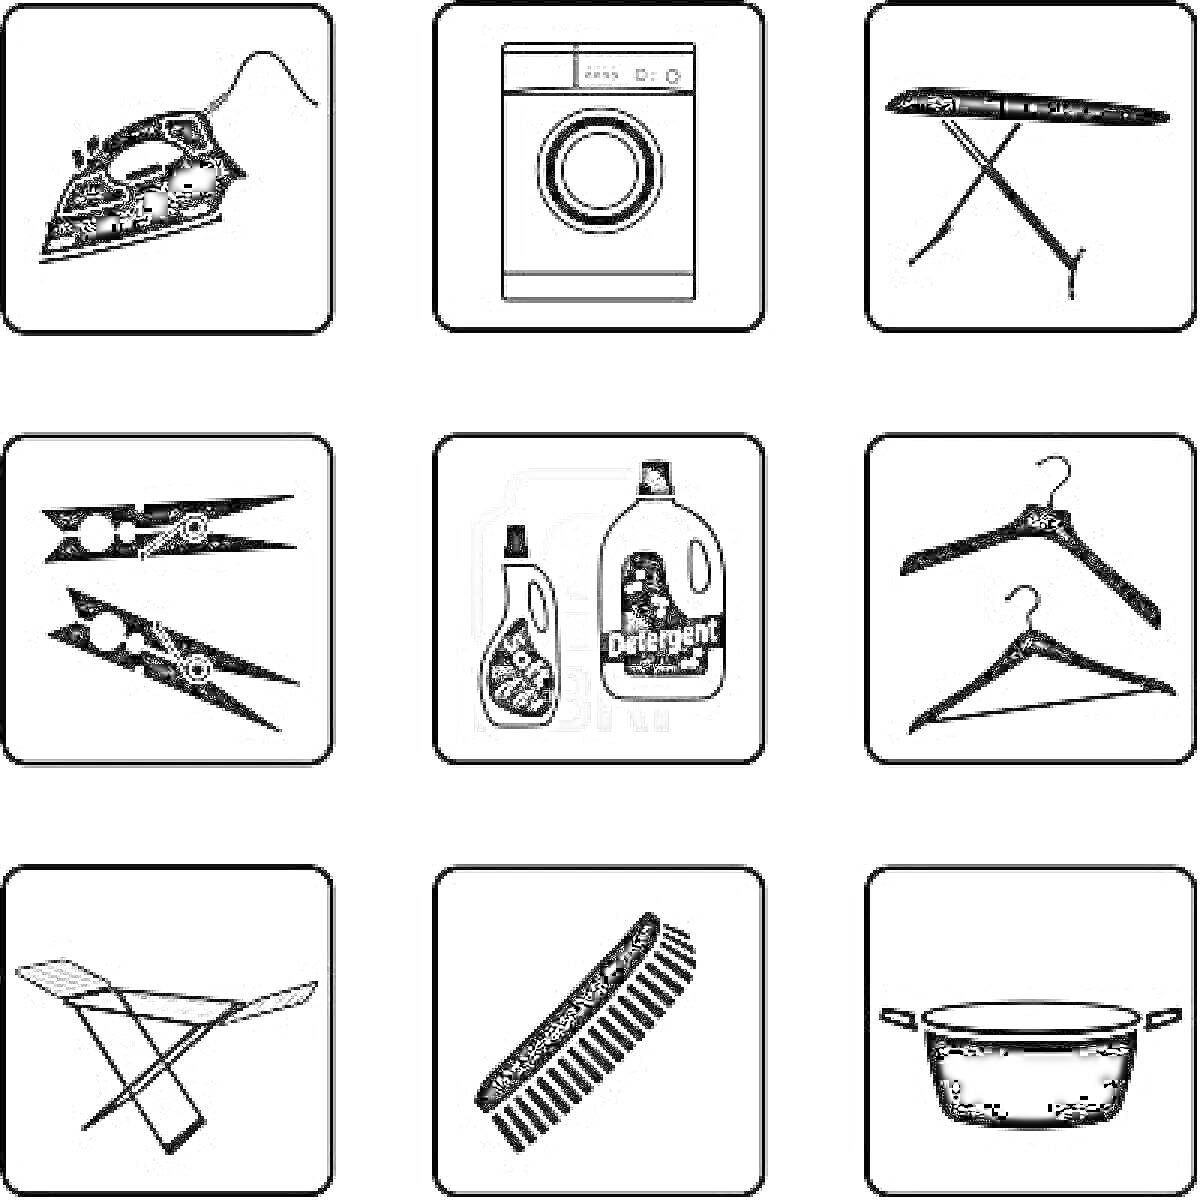 Раскраска Уход за одеждой: утюг, стиральная машина, гладильная доска, прищепки, кондиционер и стиральный порошок, вешалки, сушилка, щетка, кастрюля